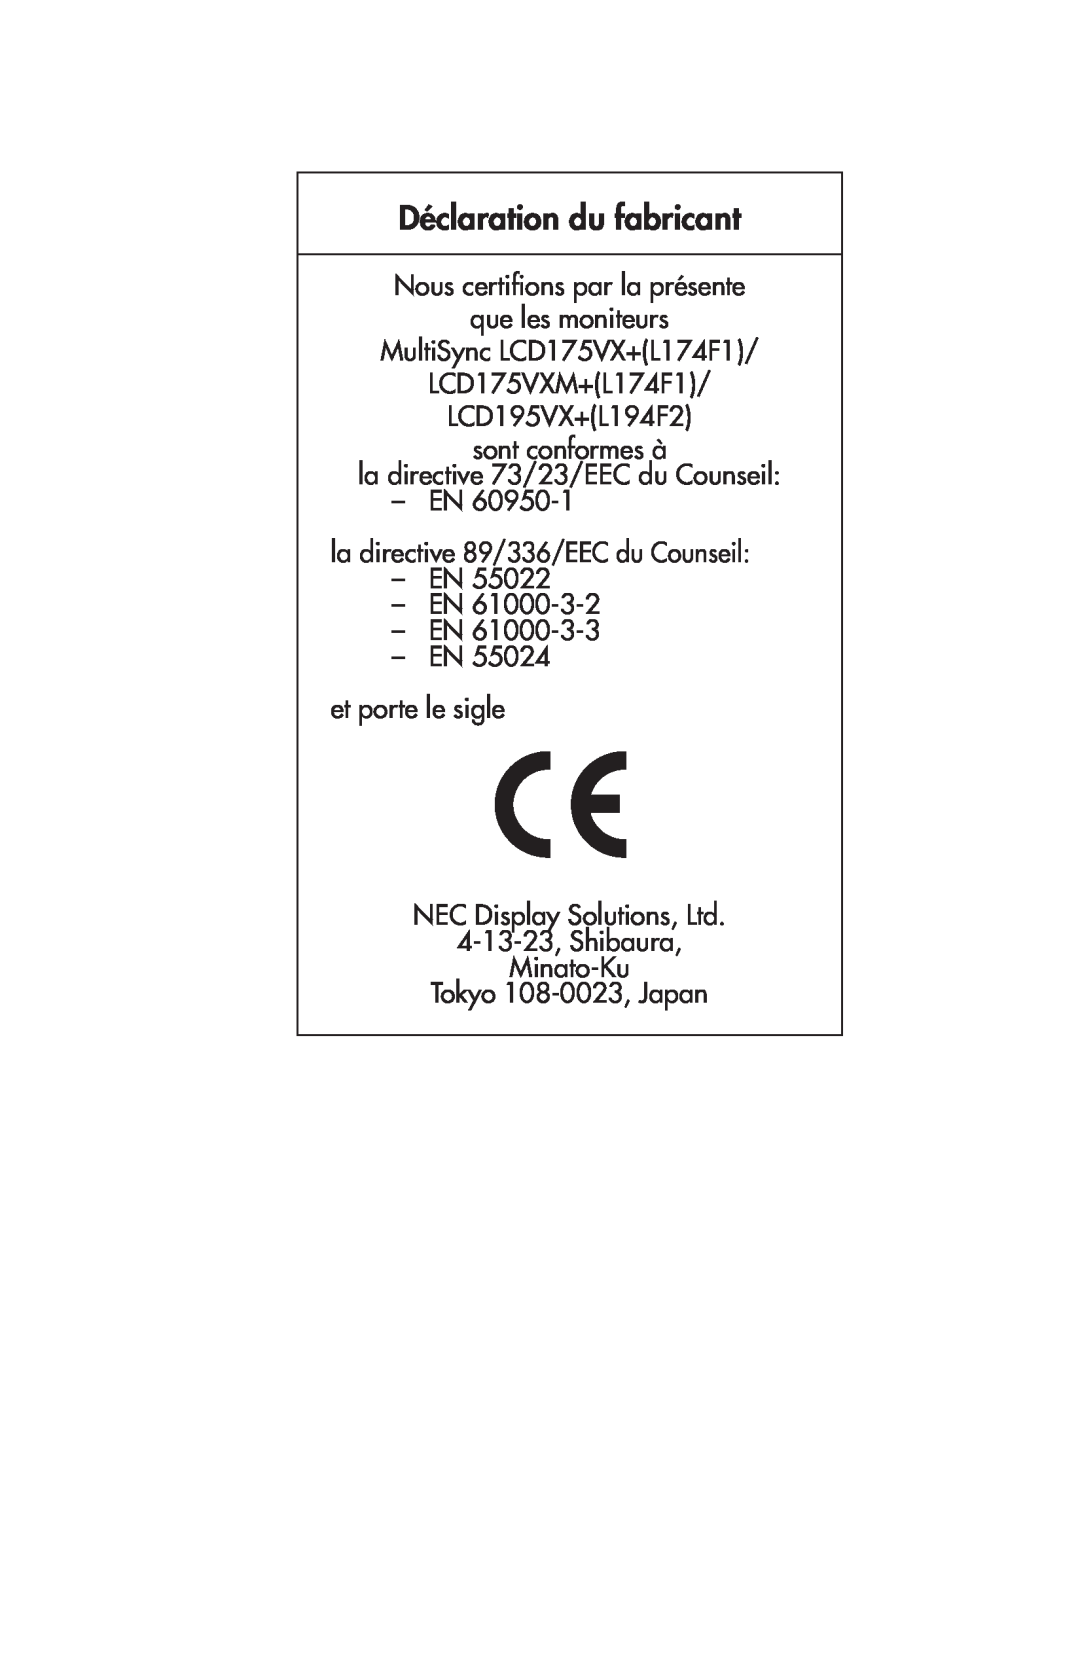 NEC 175VXM Déclaration du fabricant, Nous certifions par la présente que les moniteurs, LCD195VX+L194F2 sont conformes à 